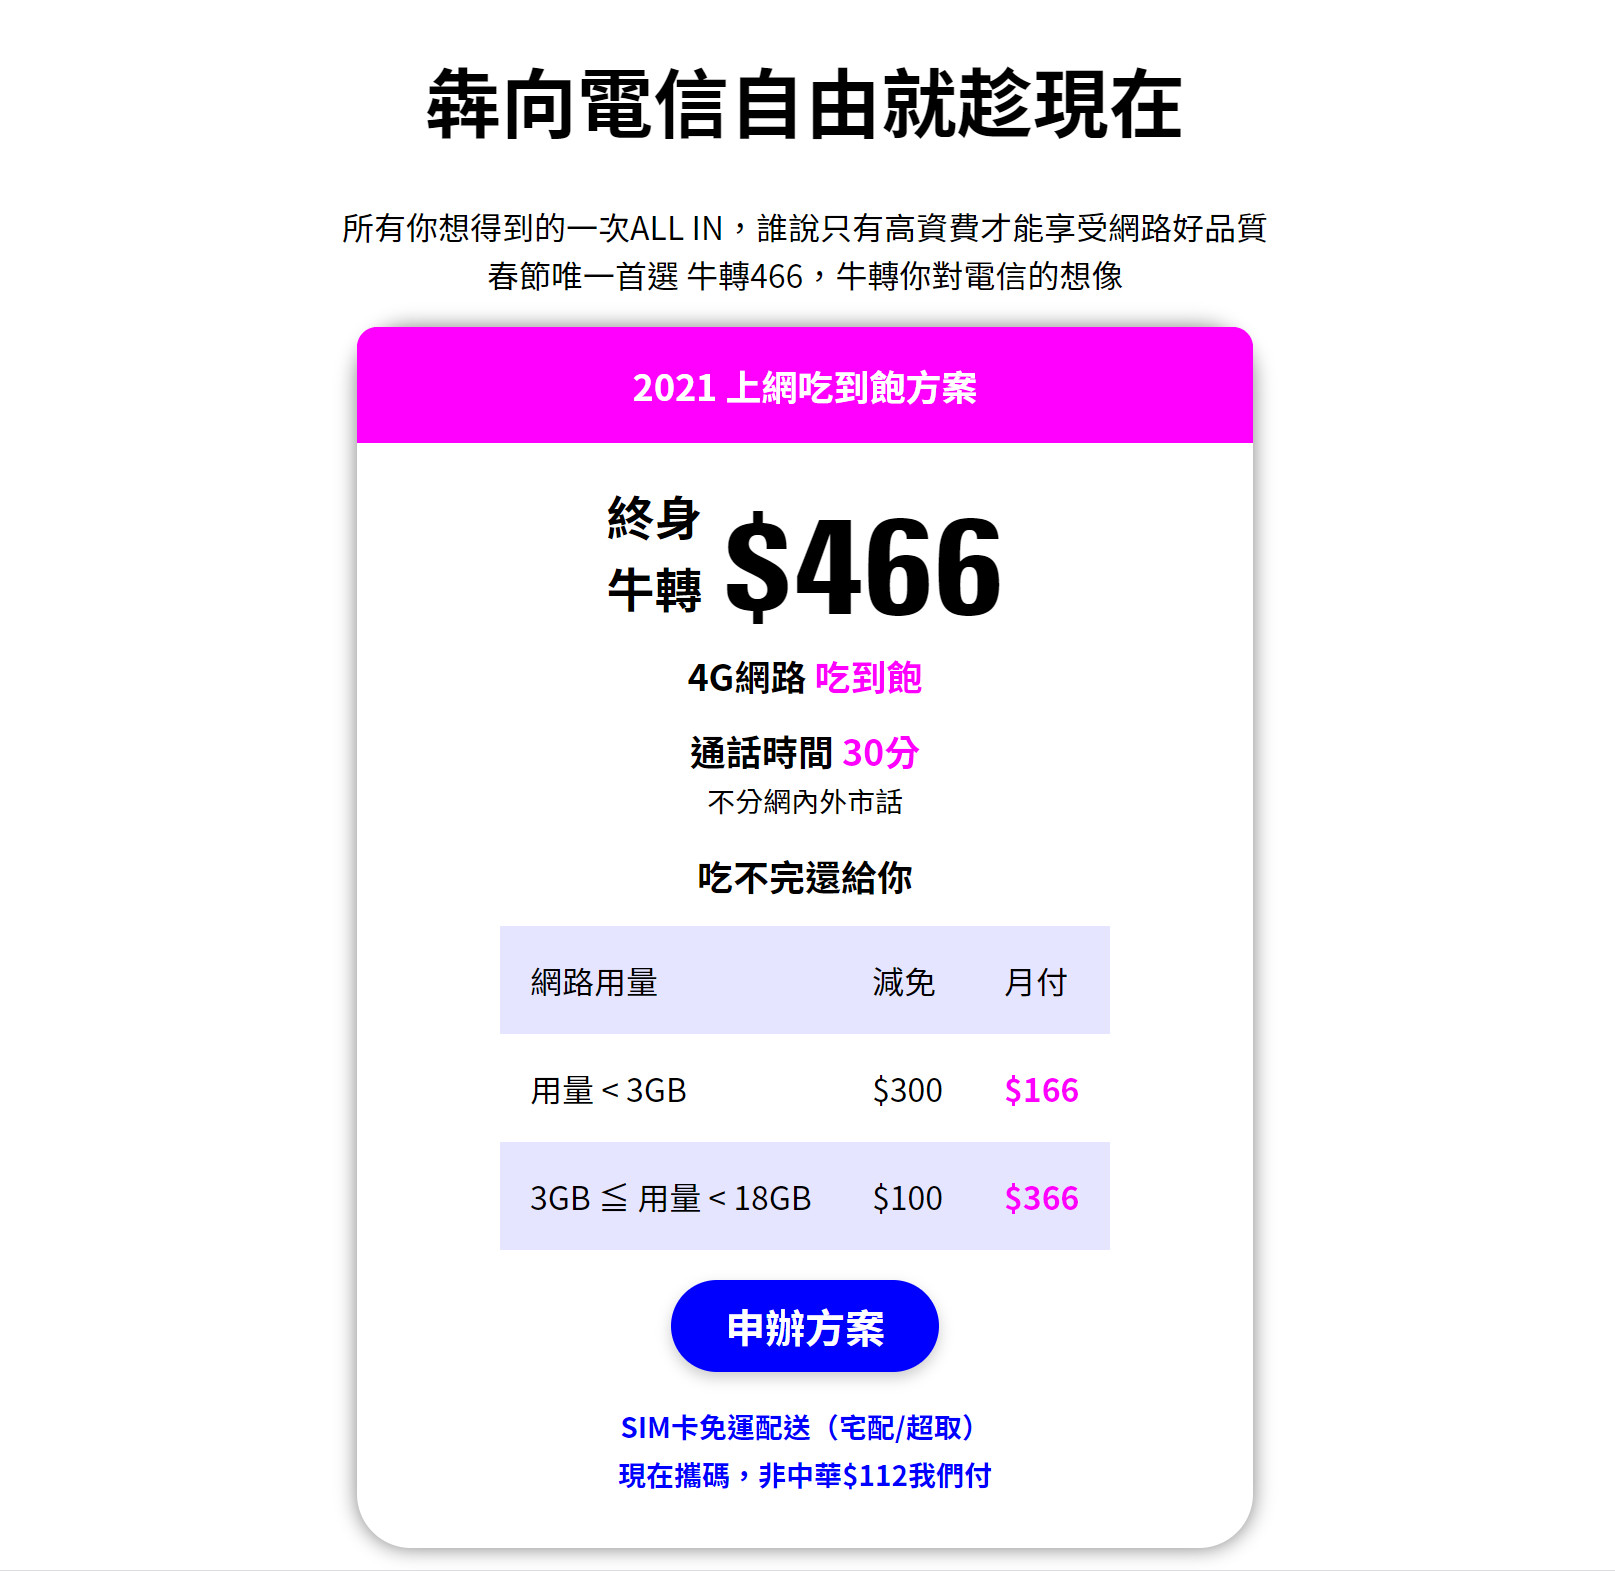 【無框行動】新春專案，中華電信大4G網路吃到飽466元，低流量只要166元!超適合搭配台灣之星雙11專案。 - 無框行動門市 - 敗家達人推薦